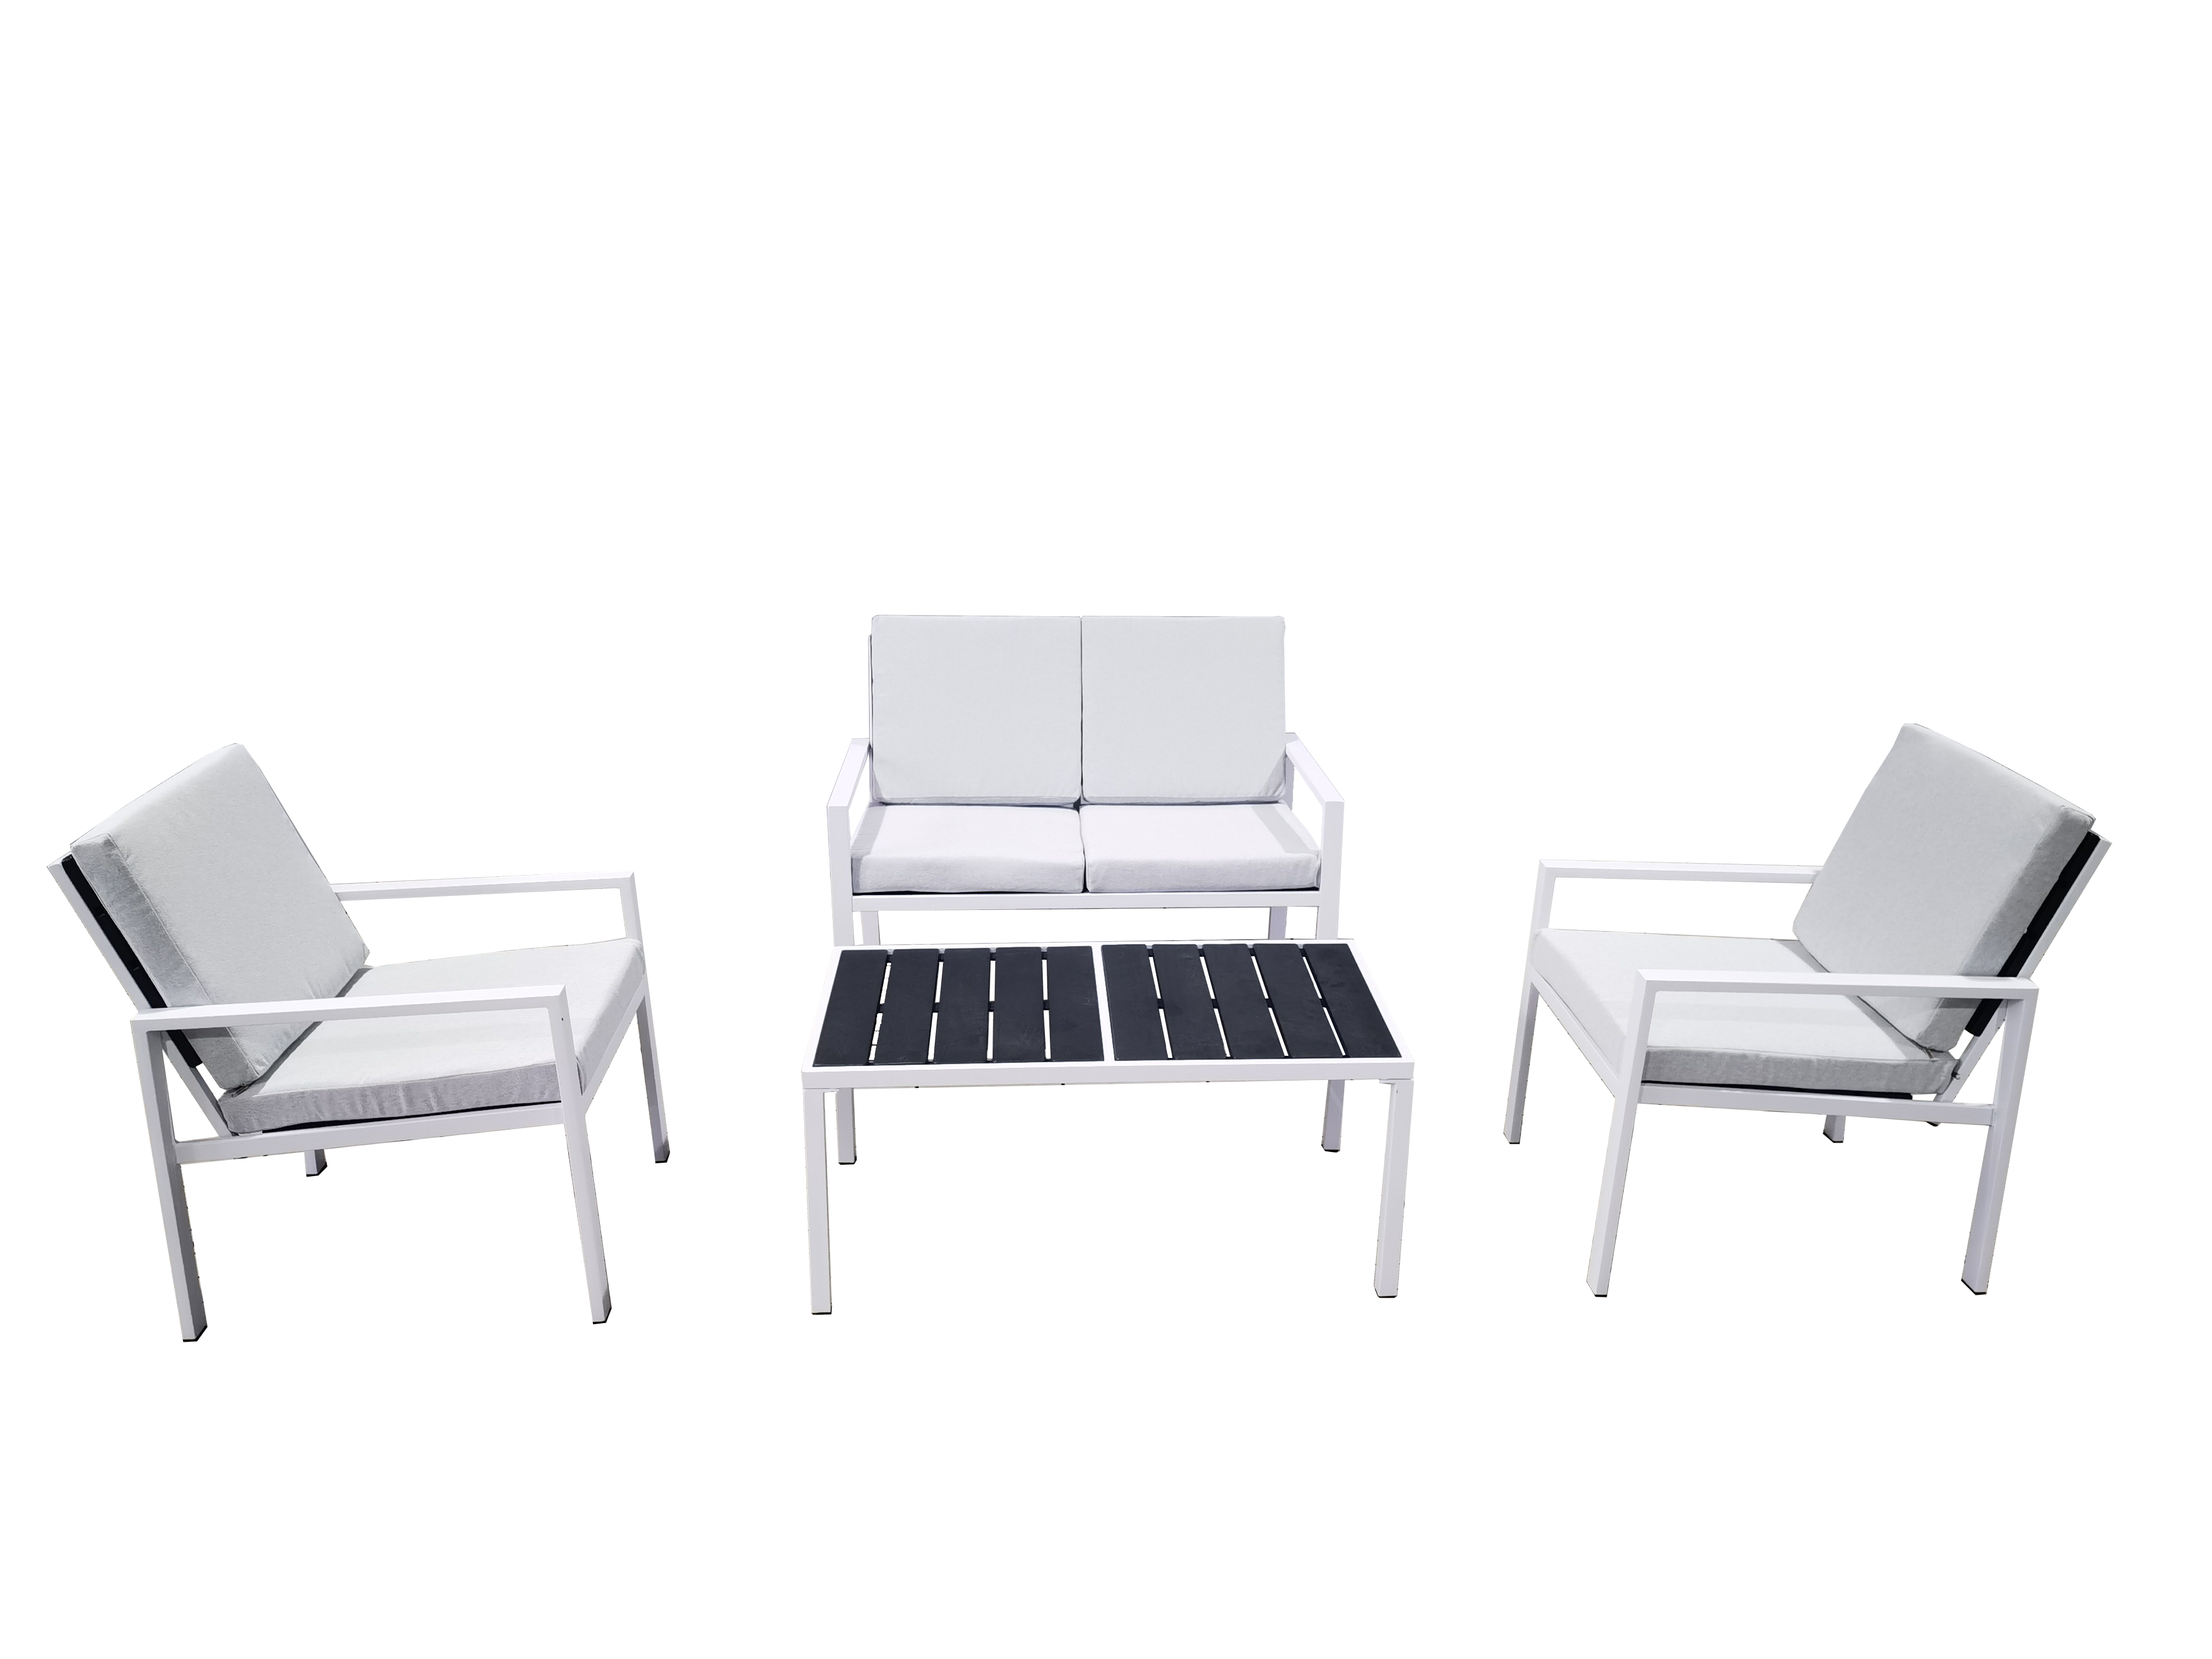 Outdoor PE Plastic Garden Sofa Set With Wood Grain Design